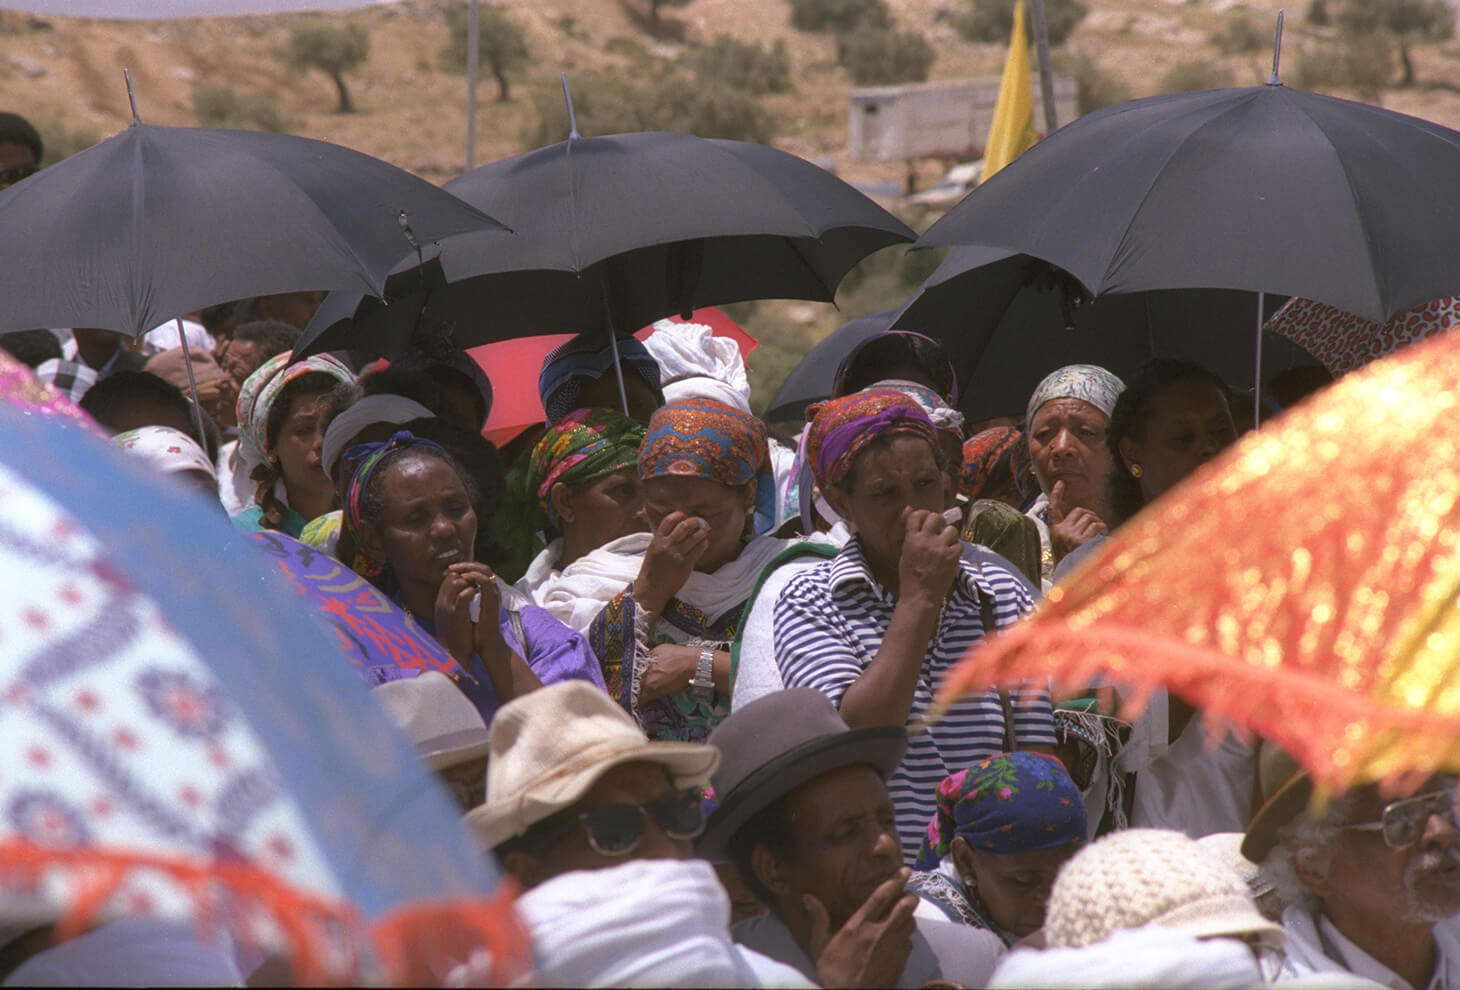 טקס אזכרה של עולים מאתיופיה, לזכר חבריהם שנפלו בדרכם לישראל, בהר הטייסים. בצילום, נשים בוכות בטקס האזכרה. צלם: זיו קורן לע